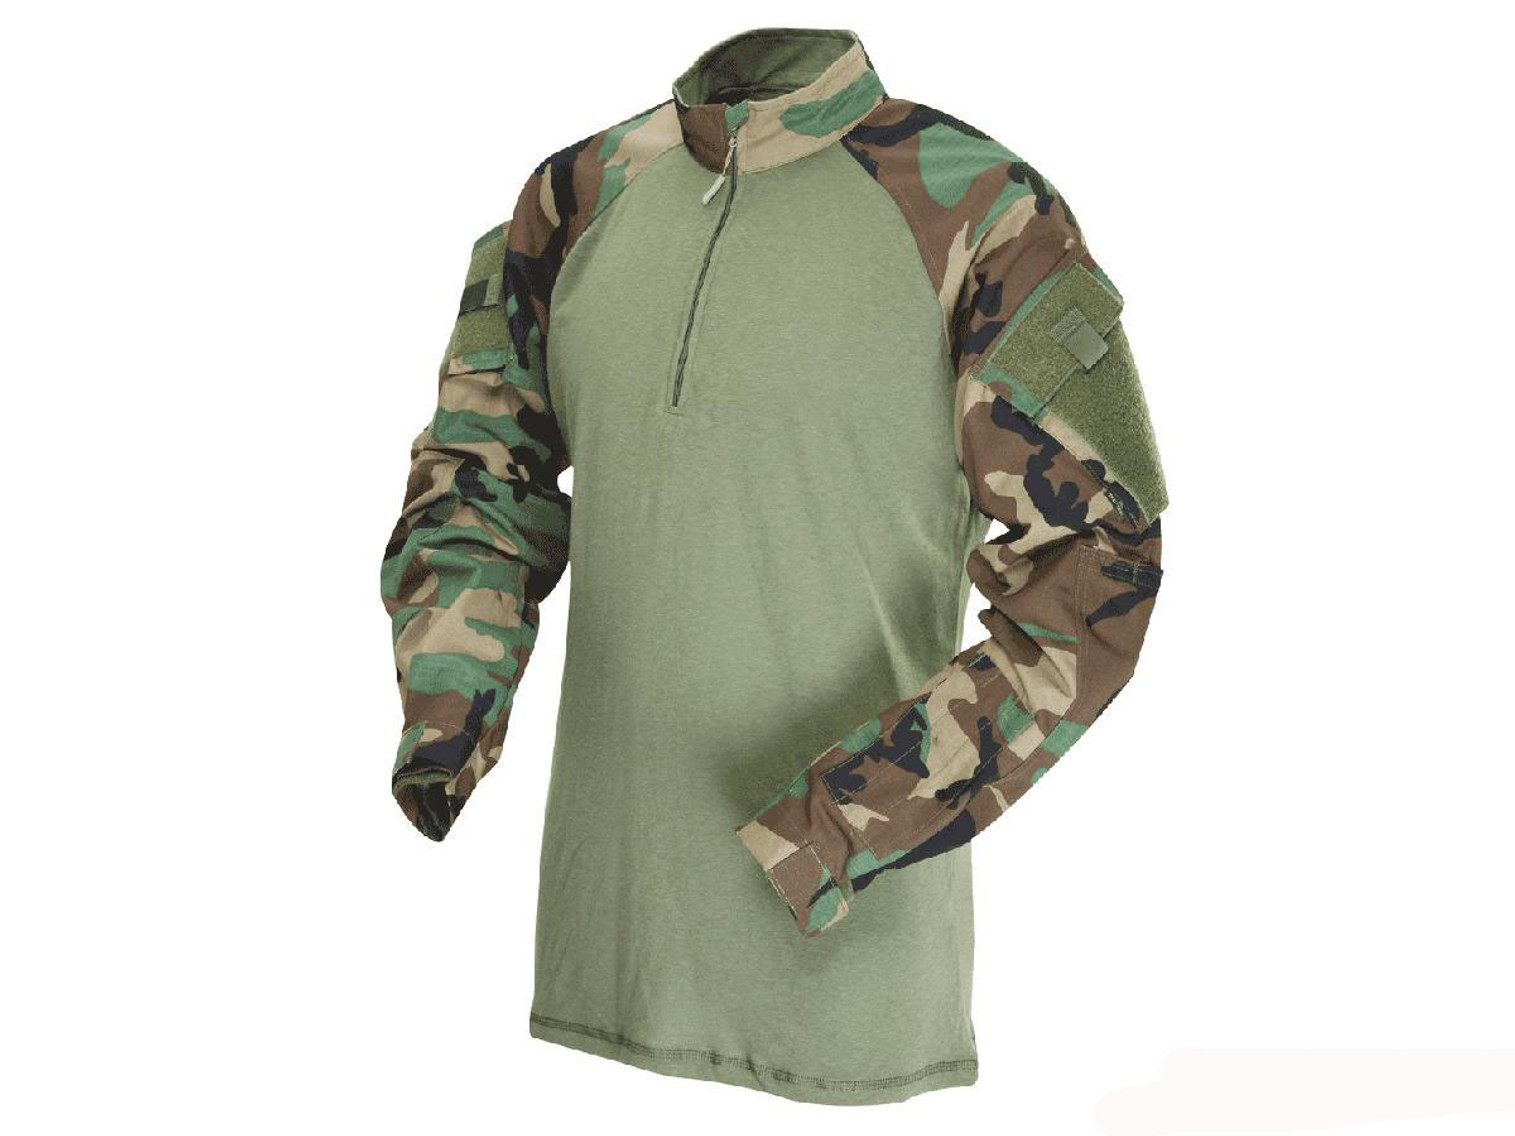 Tru-Spec Tactical Response Uniform 1/4 Zip Combat Shirt - Woodland (Size: Small)